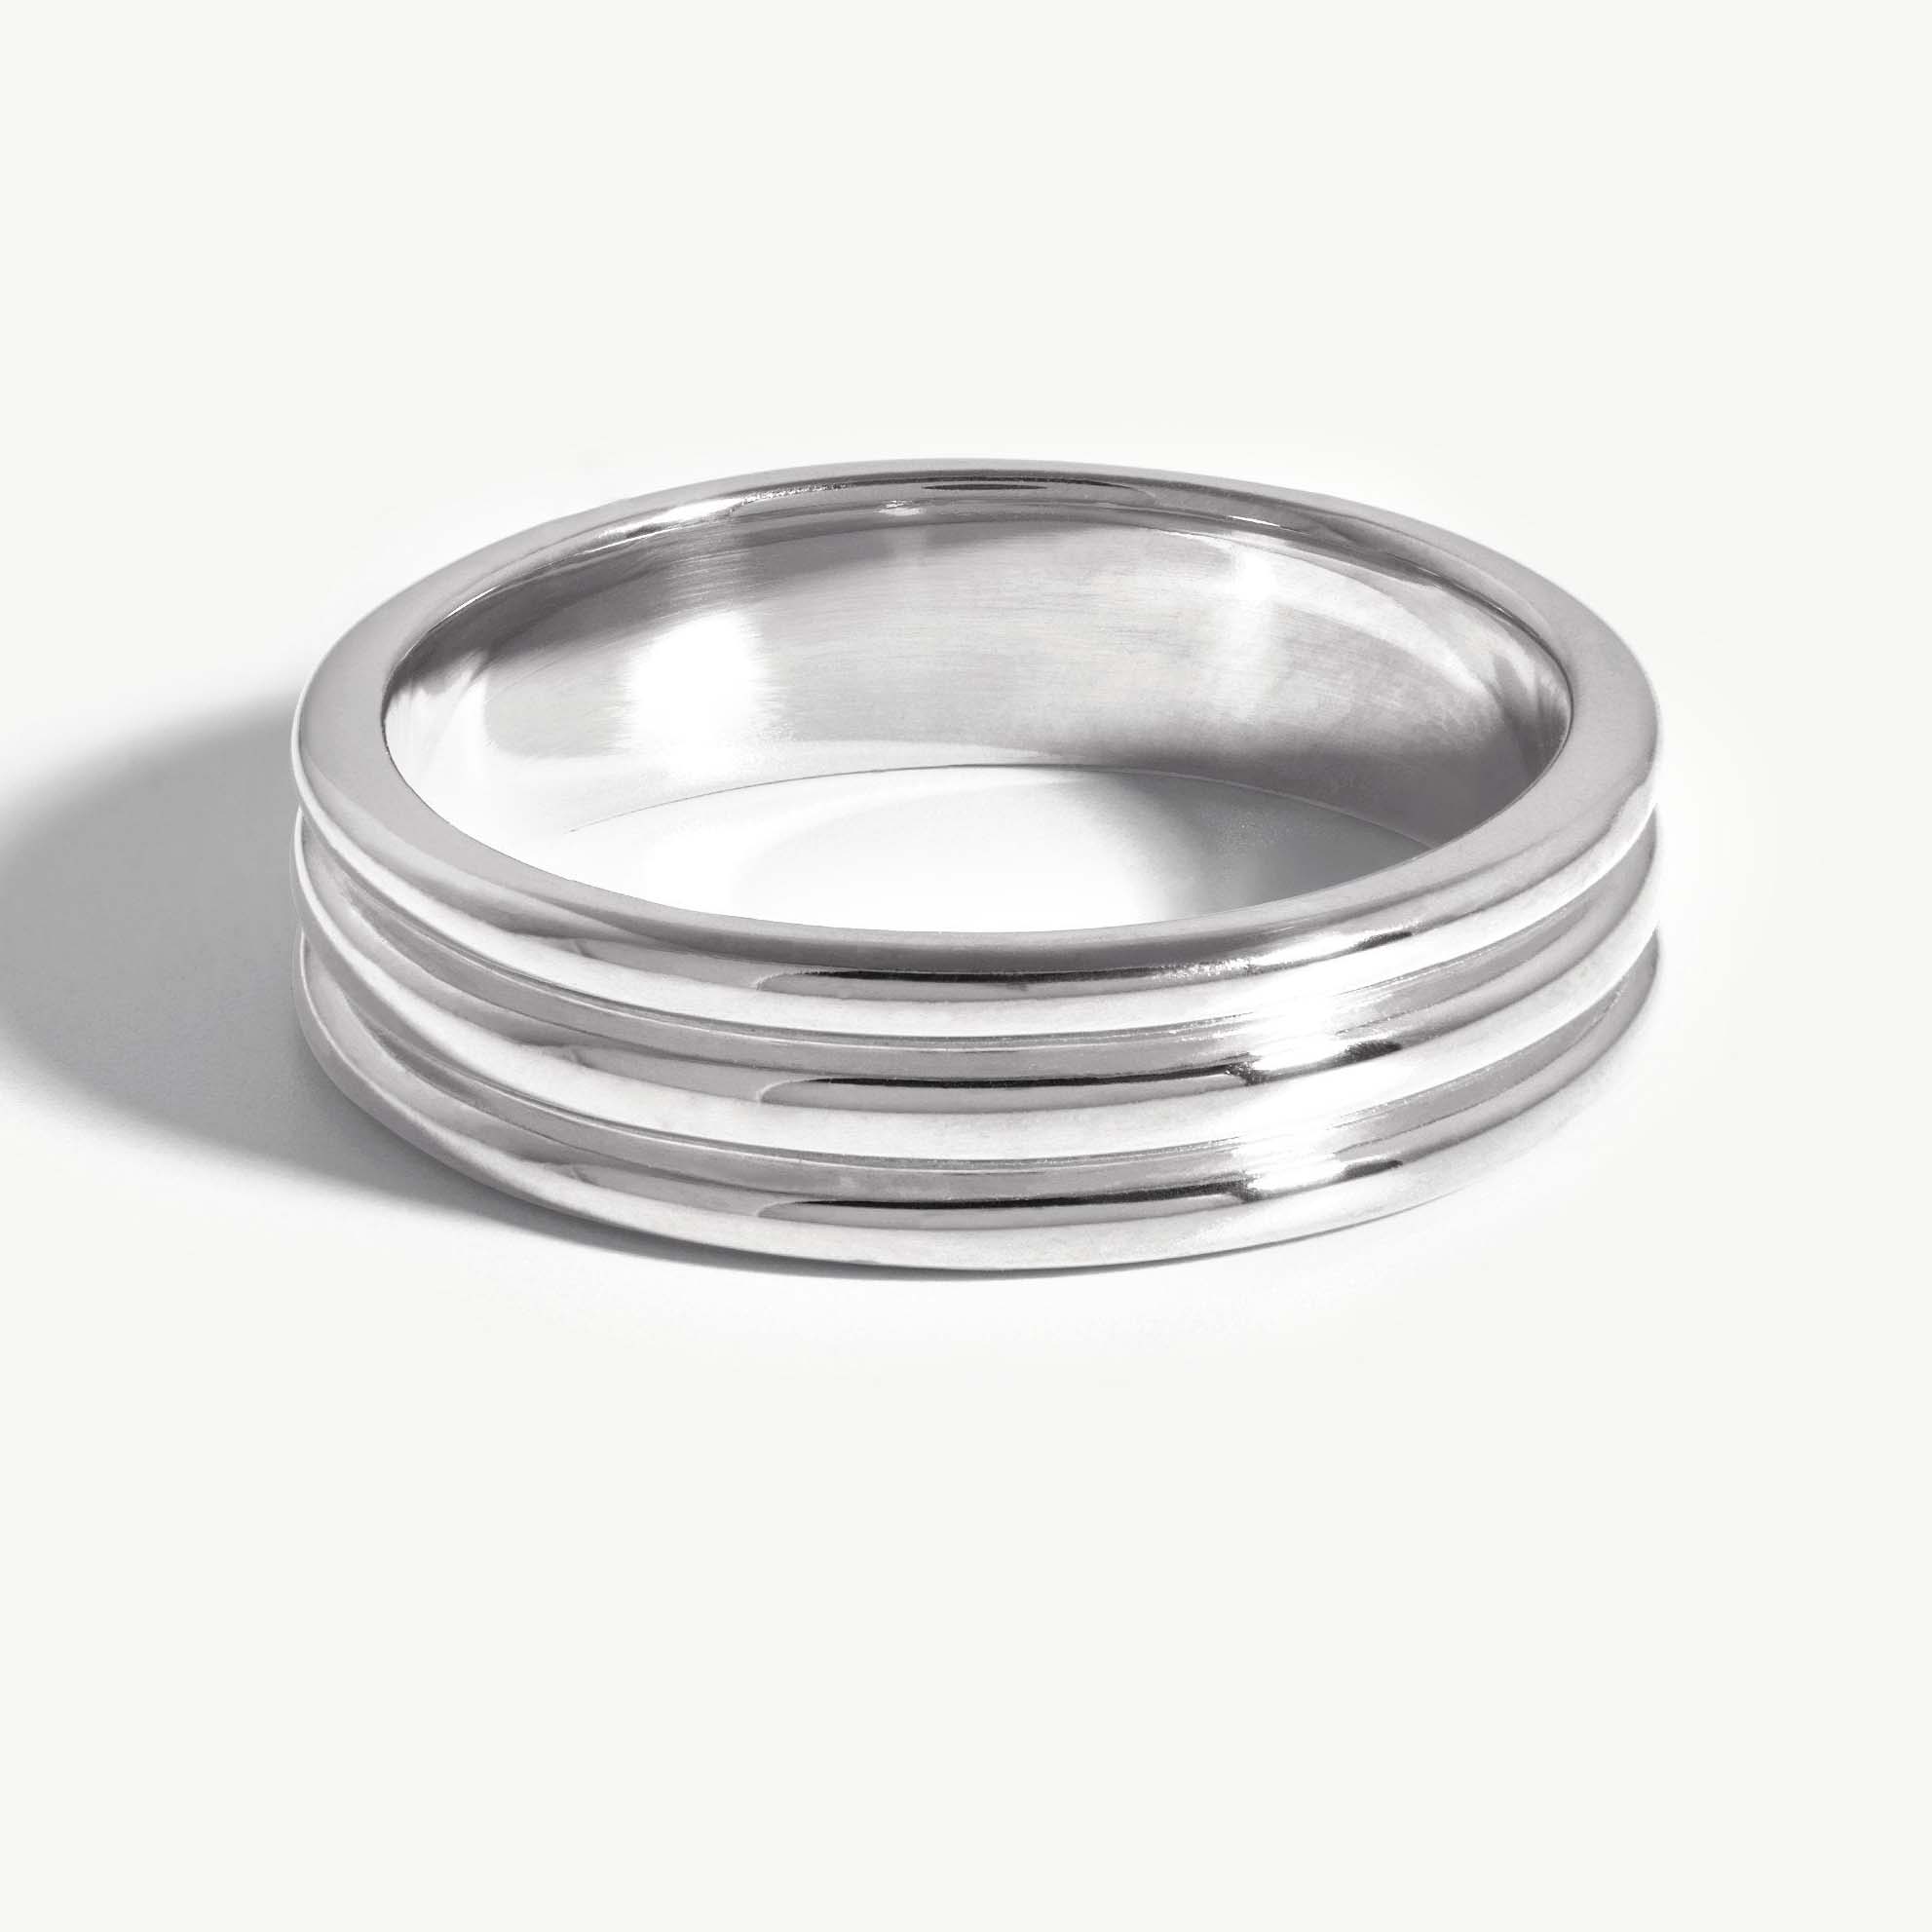 Perhiasan cincin grosir khusus perak 925 dengan pelapisan rhodium